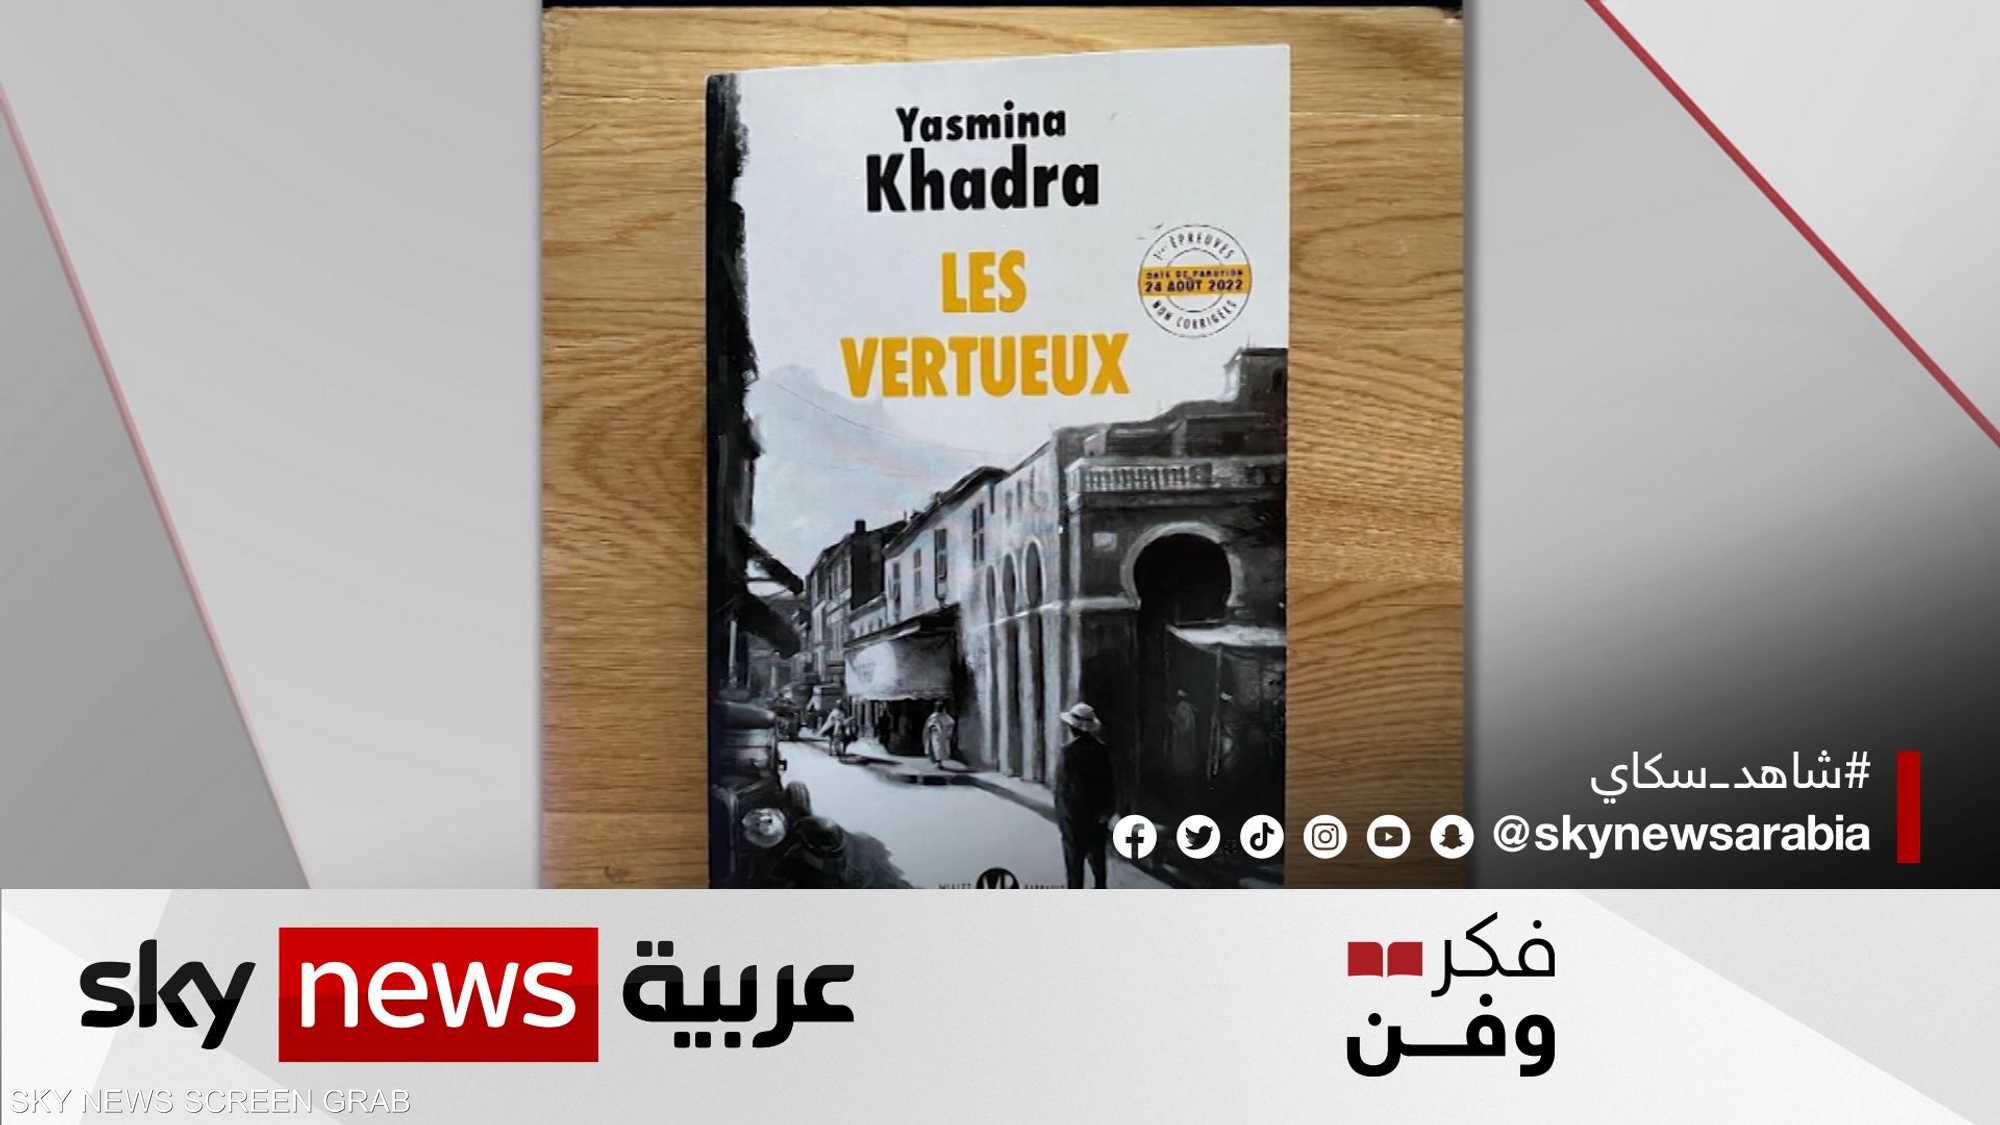 الصالحون" رواية جديدة للأديب الجزائري ياسمينة خضرا